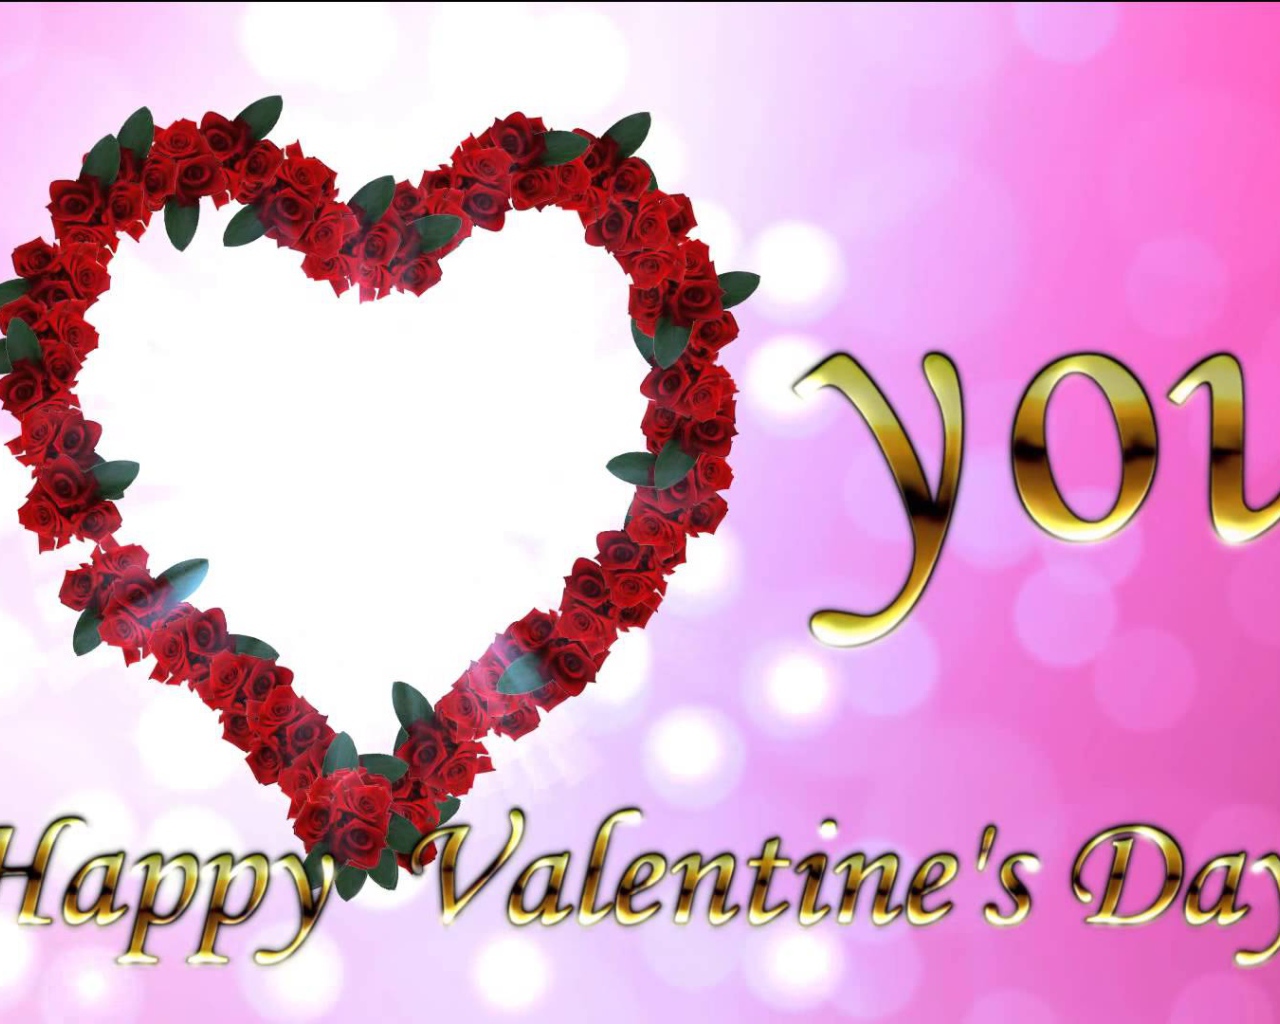 Признание в любви на День Влюбленных 14 февраля 